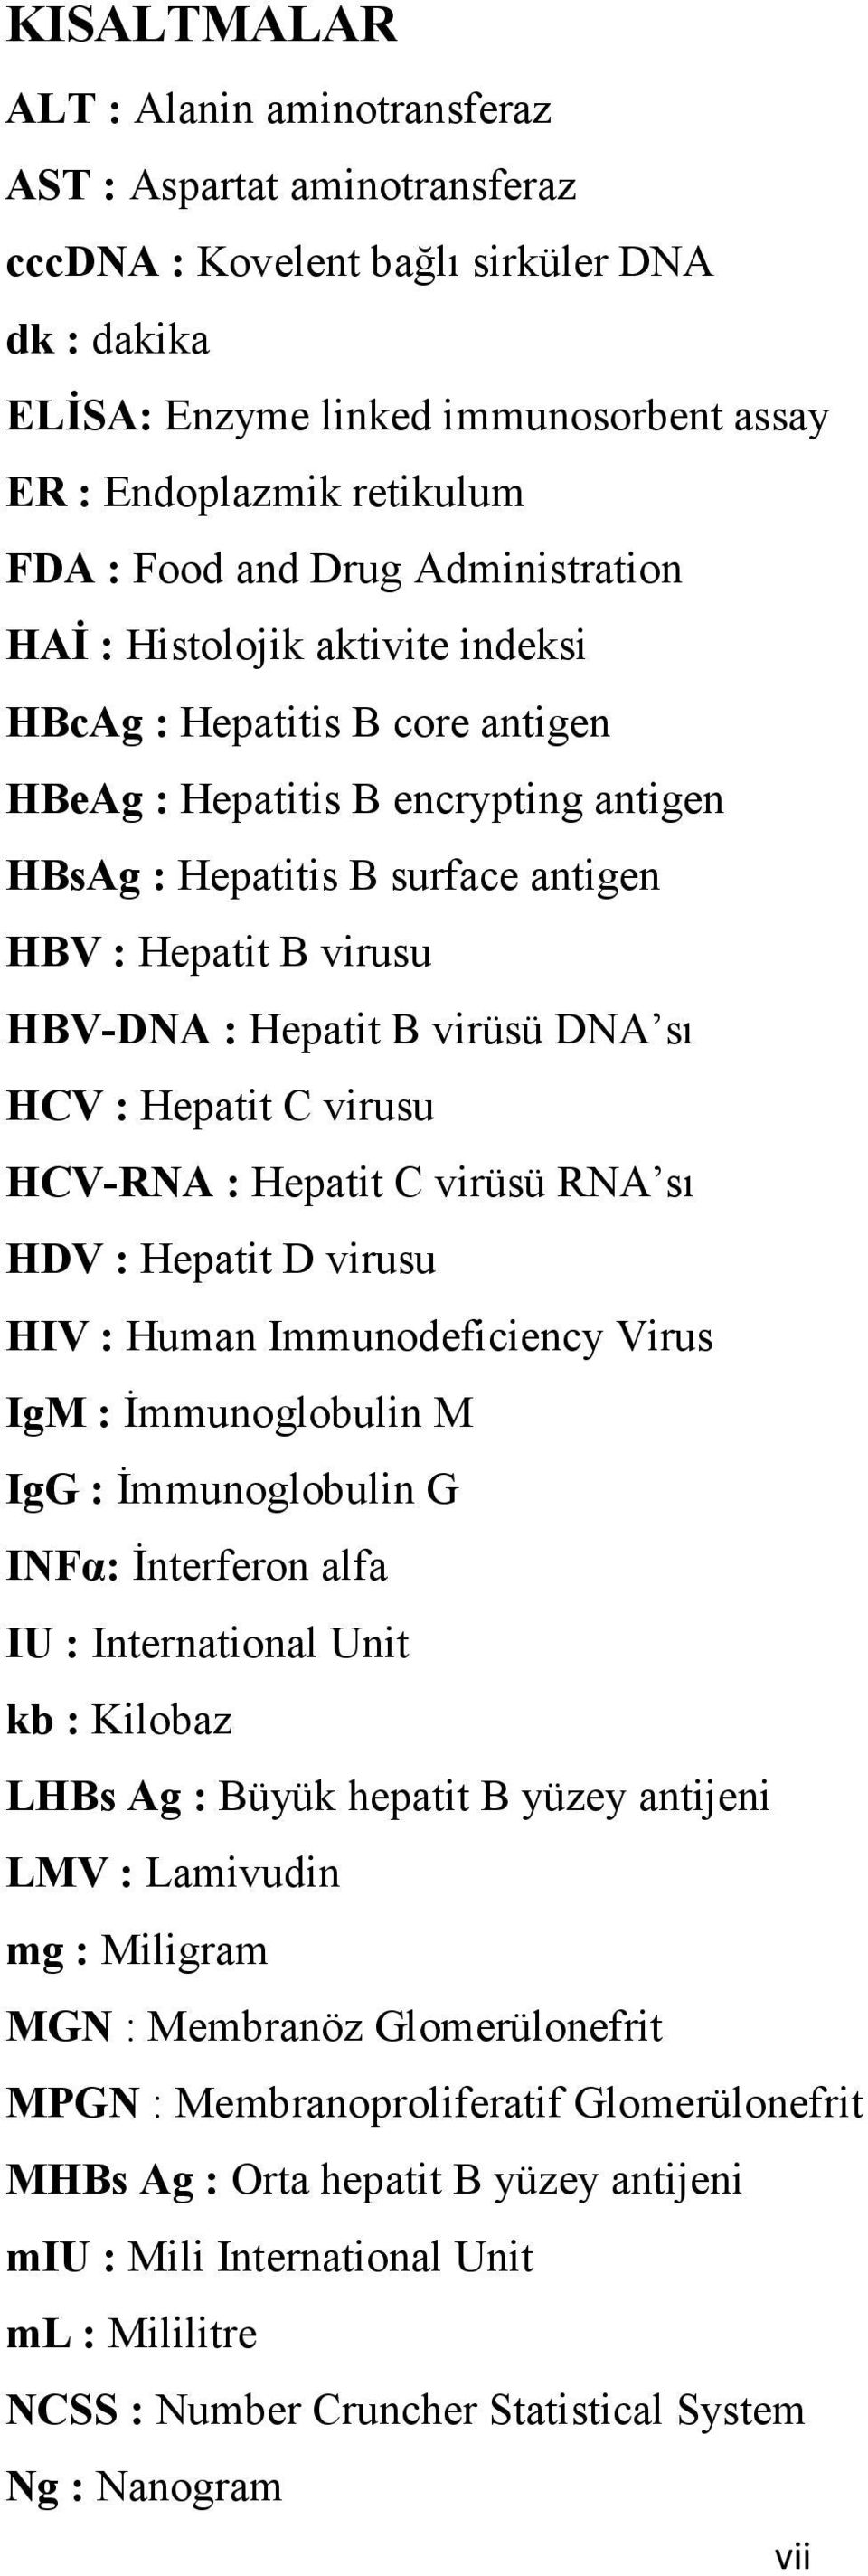 Hepatit B virüsü DNA sı HCV : Hepatit C virusu HCV-R A : Hepatit C virüsü RNA sı HDV : Hepatit D virusu HIV : Human Immunodeficiency Virus IgM : Đmmunoglobulin M IgG : Đmmunoglobulin G I Fα: